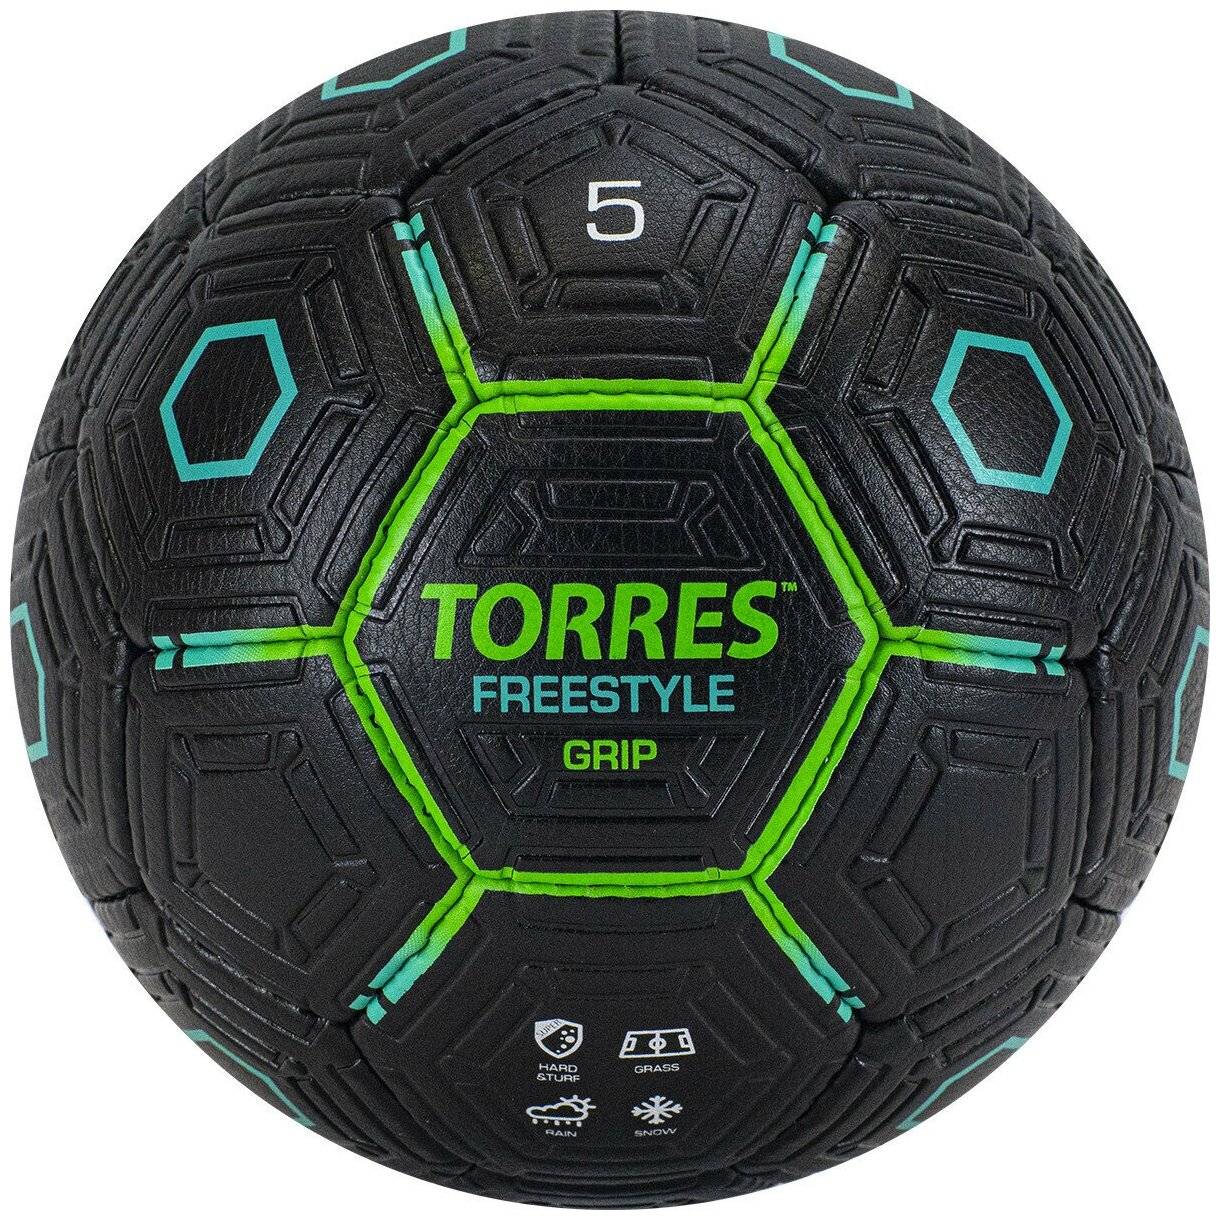 Мяч футбольный TORRES Freestyle Grip всепогодный, подходит для зимы, размер №5